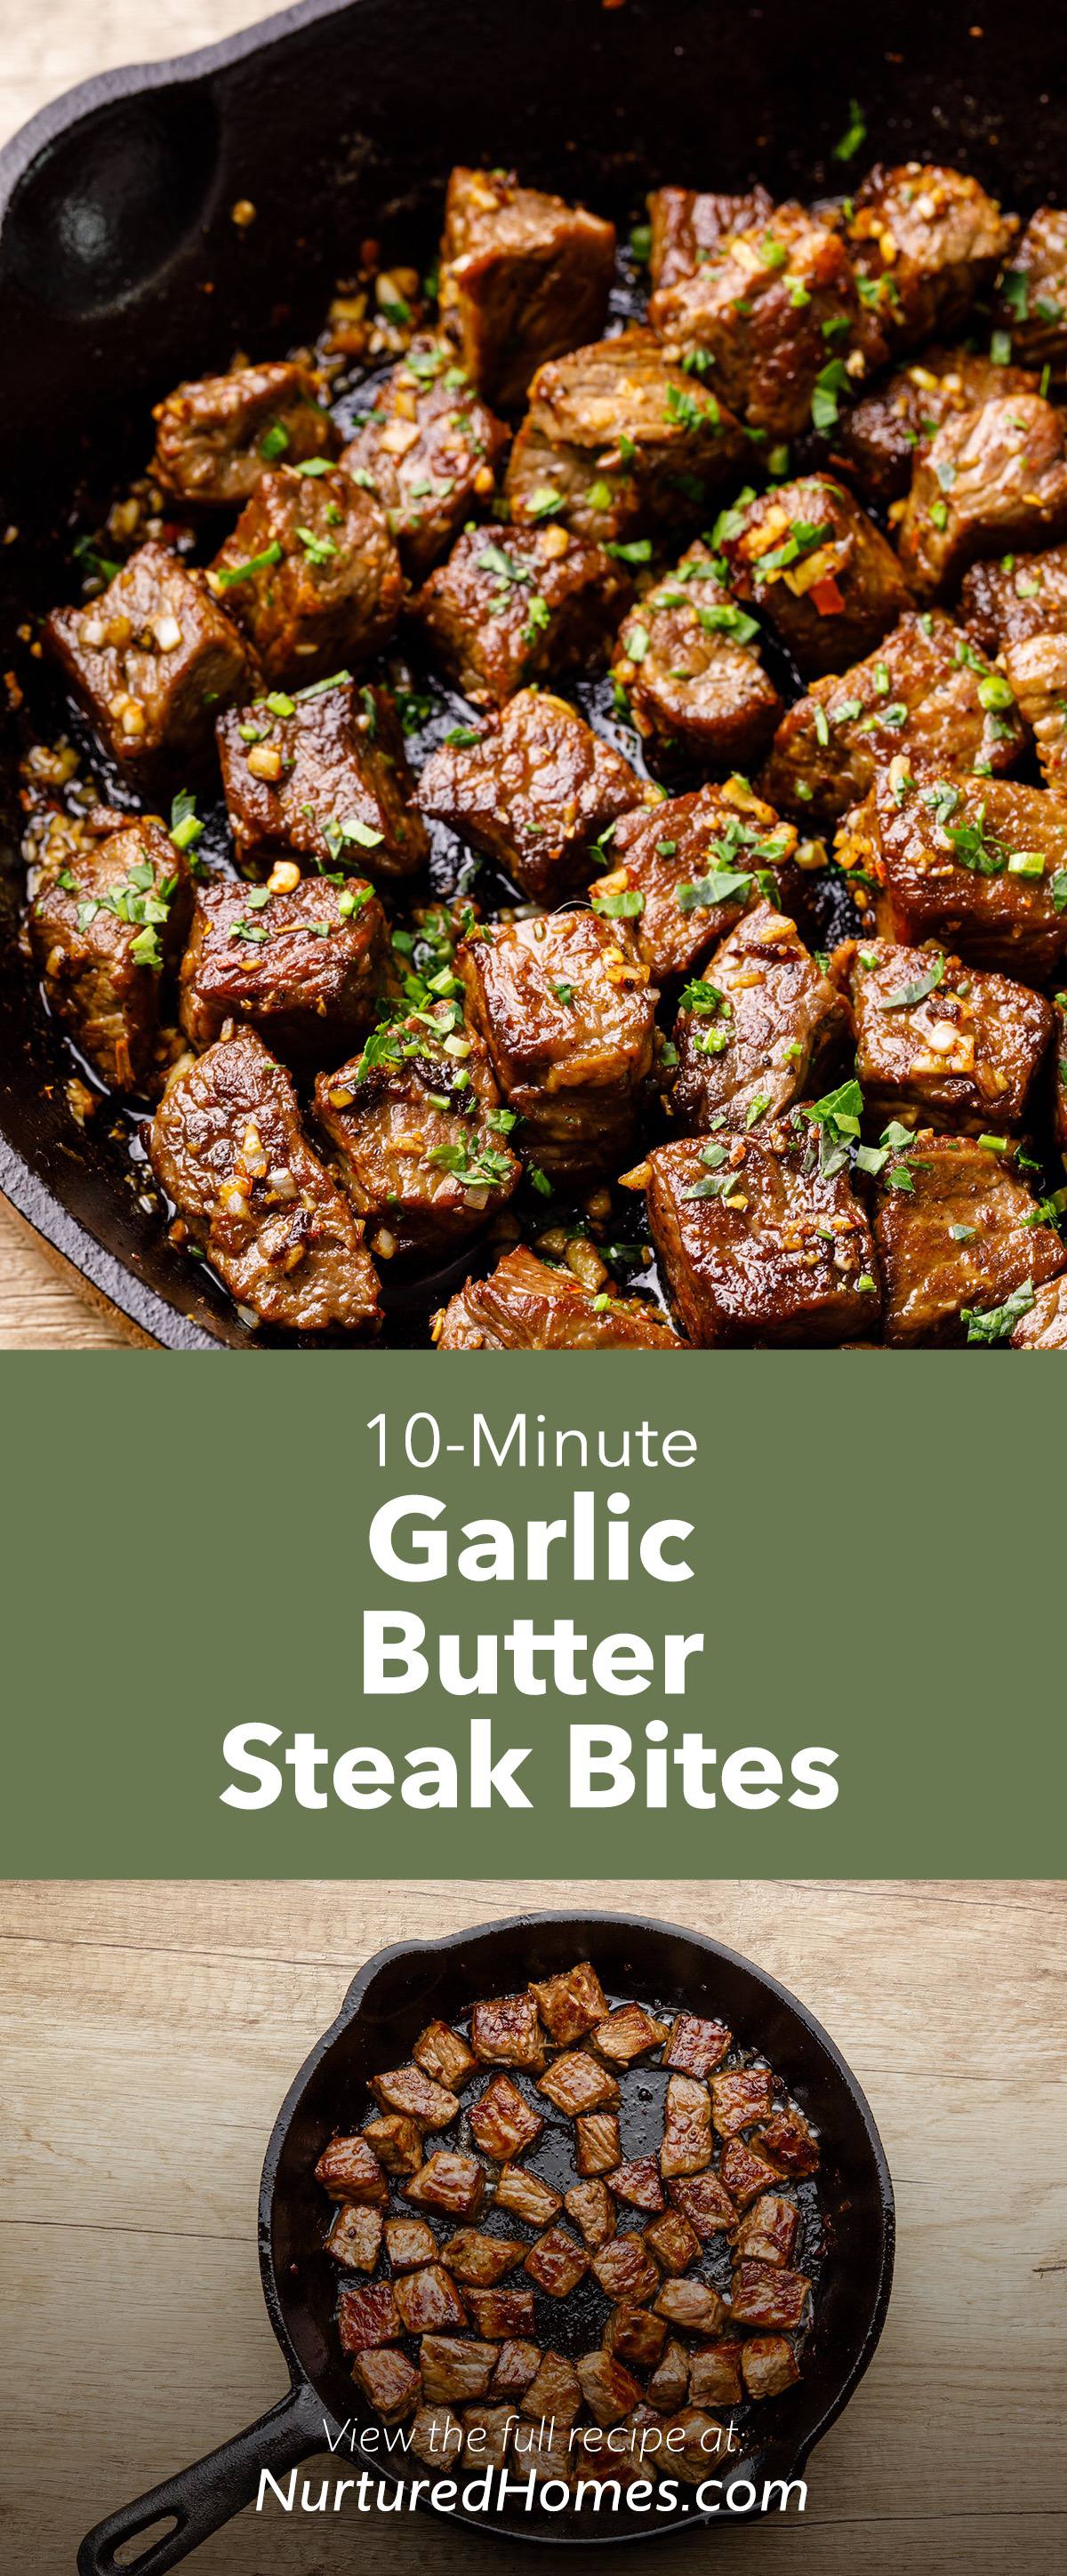 Garlic Steak Bites